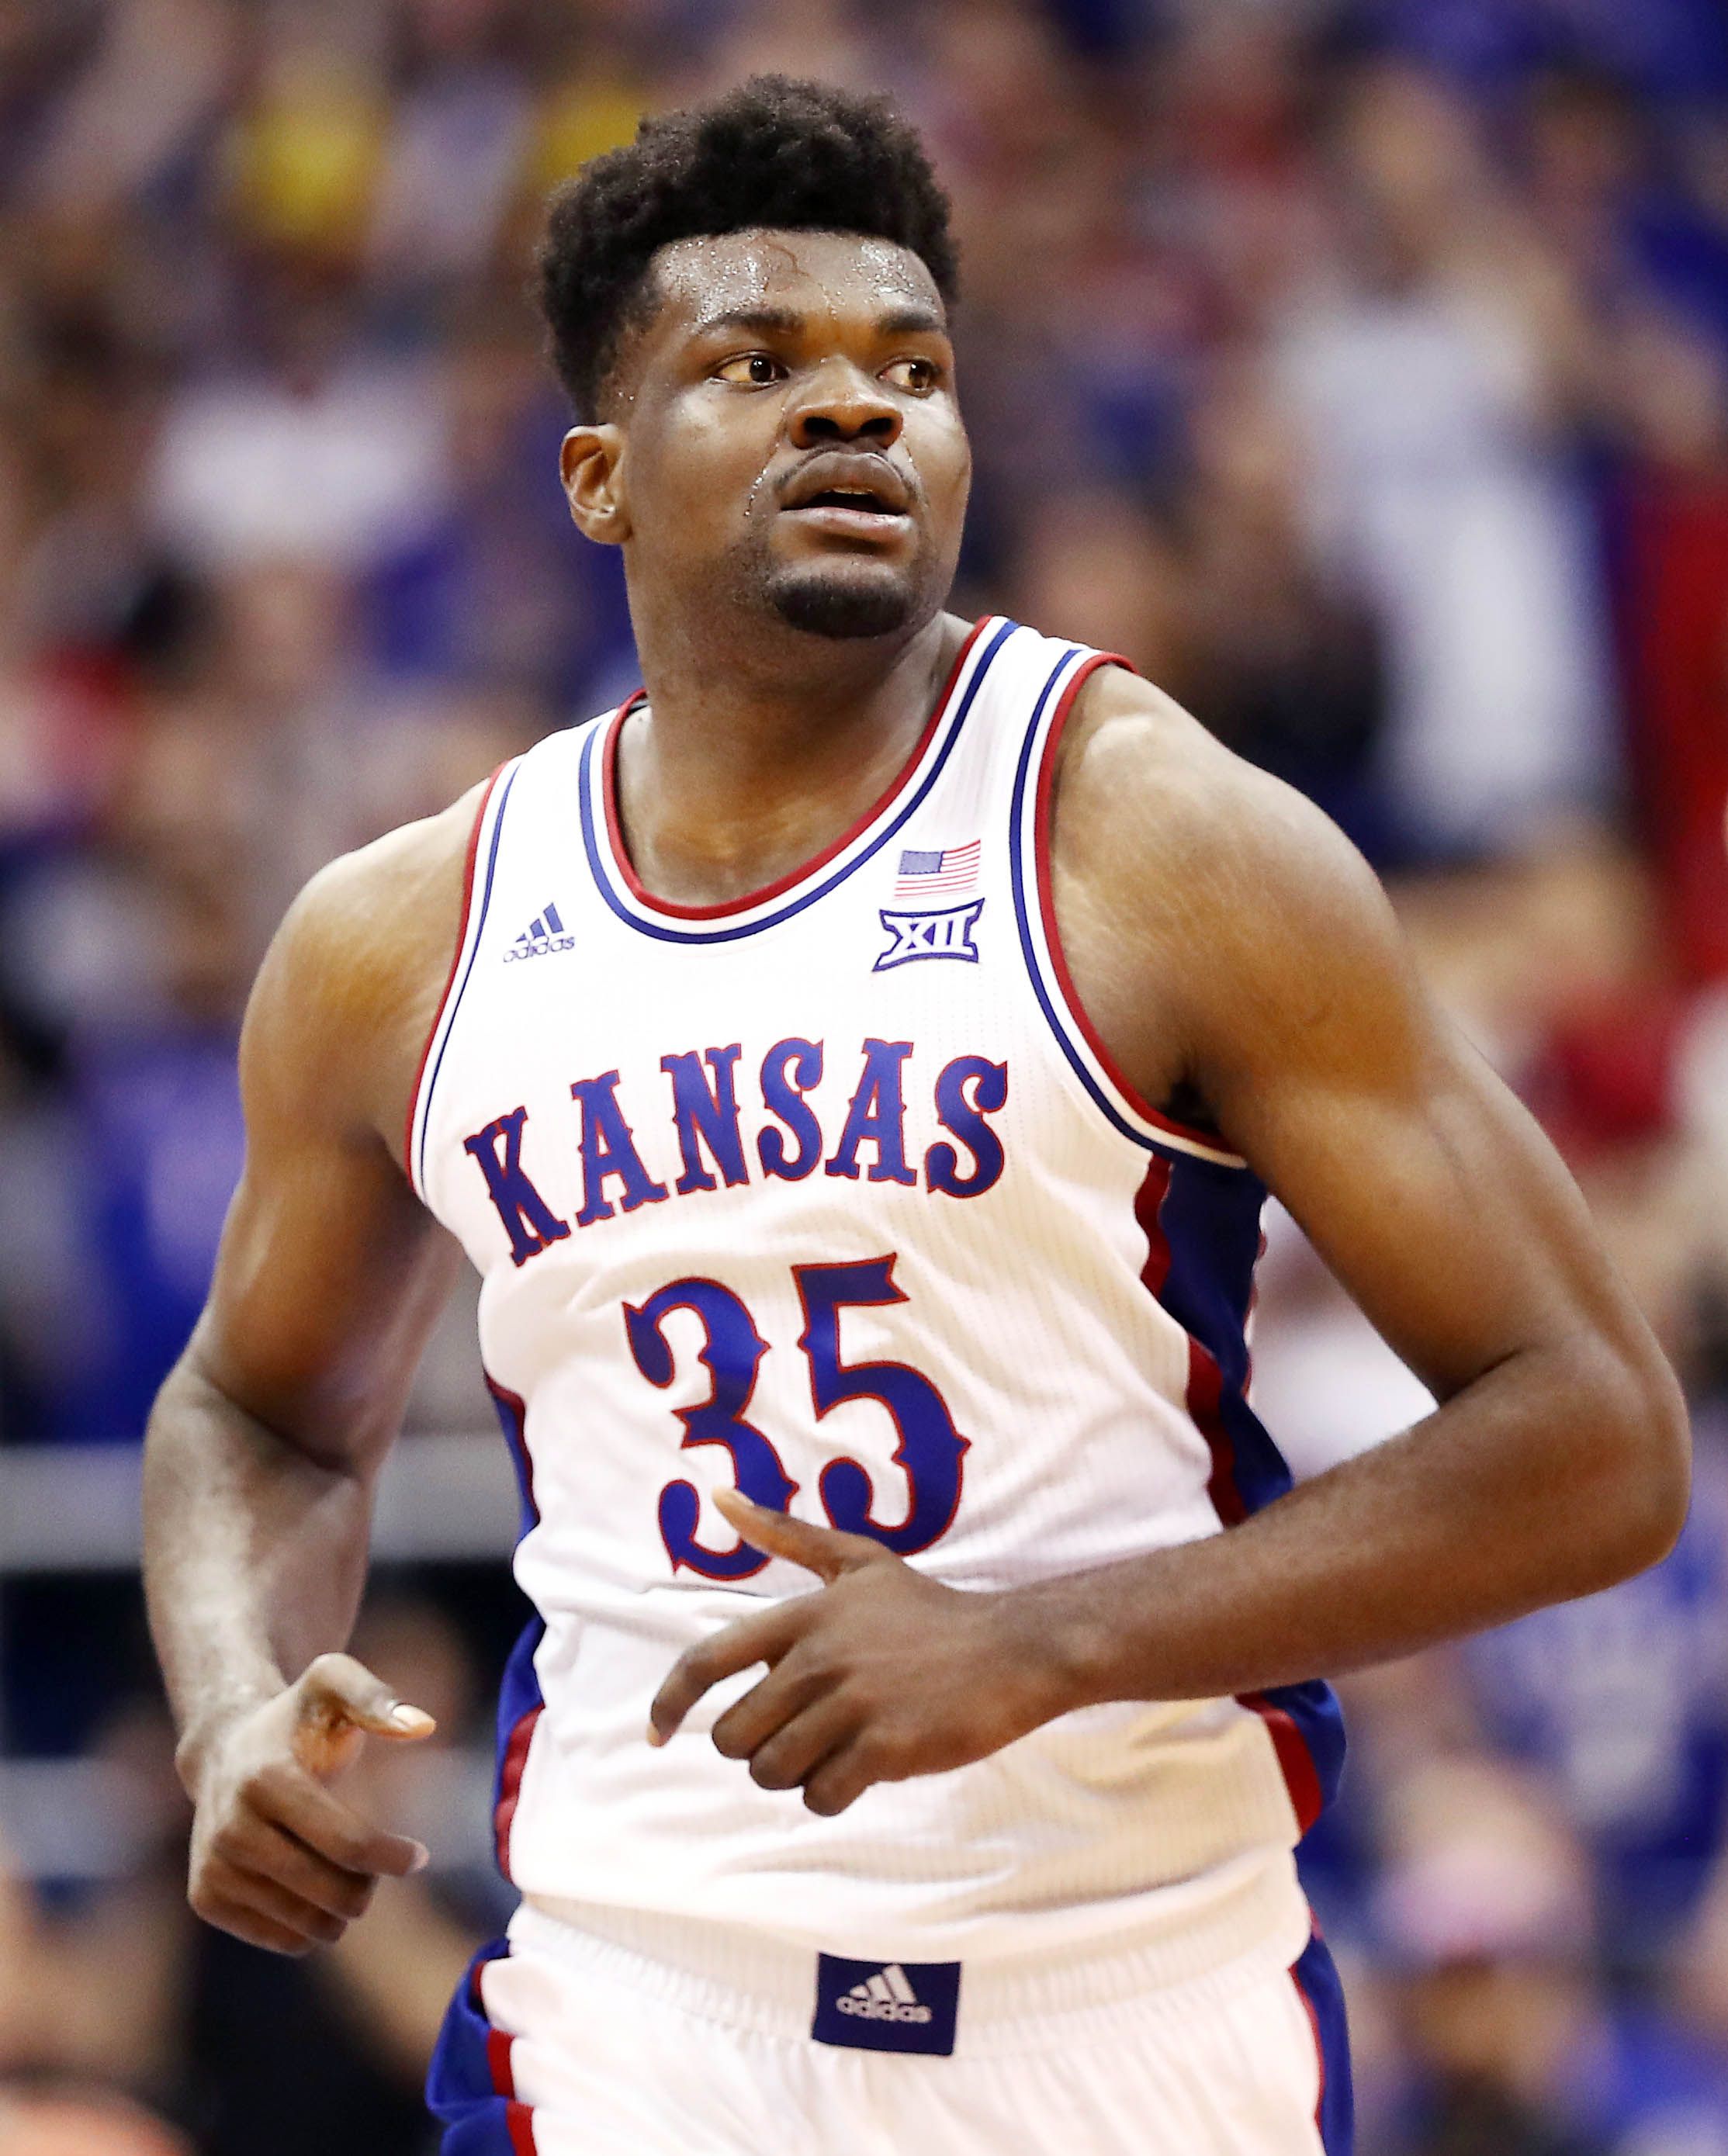 NBA Draft 2020 prospect Udoka Azubuike, Kansas center 